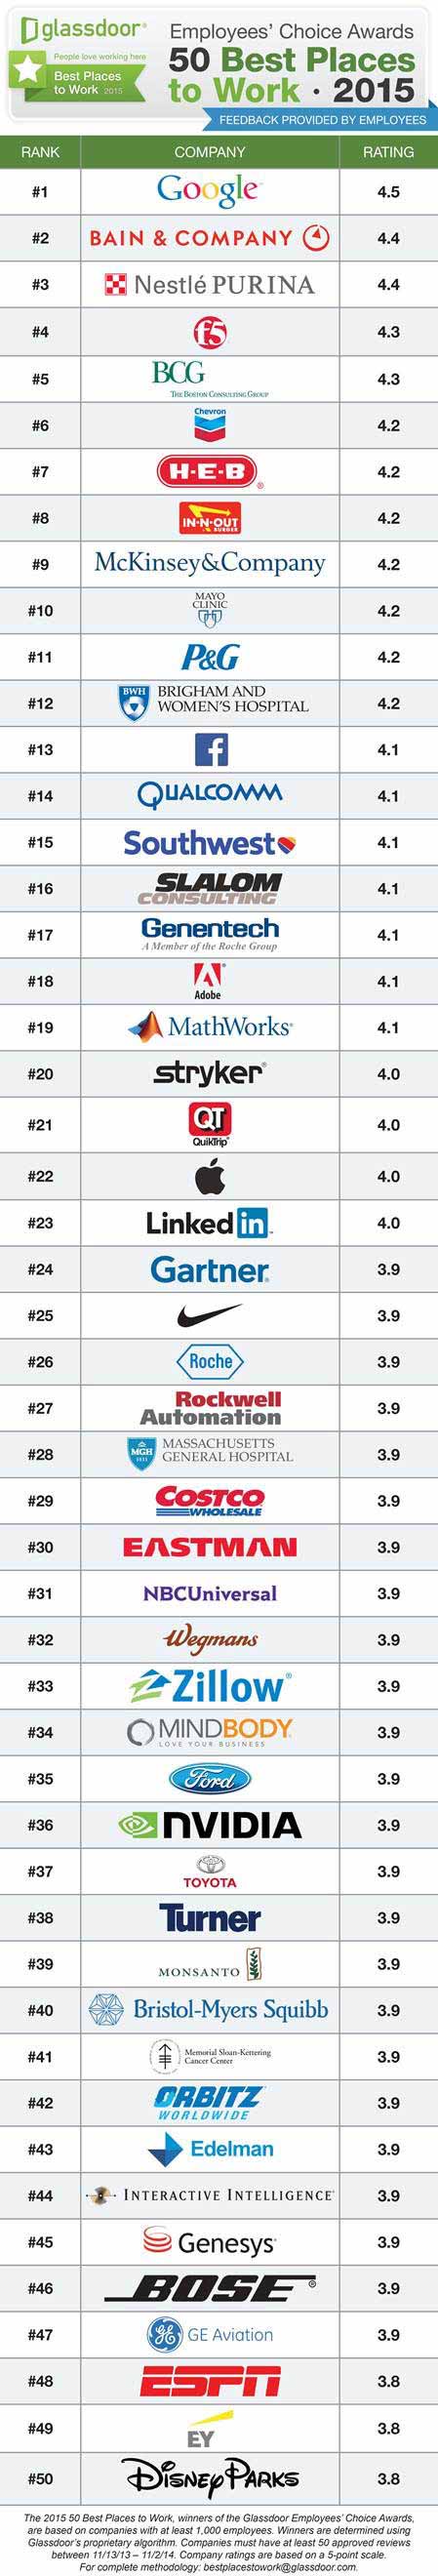 ده کمپانی برتر برای کار در سال 2015